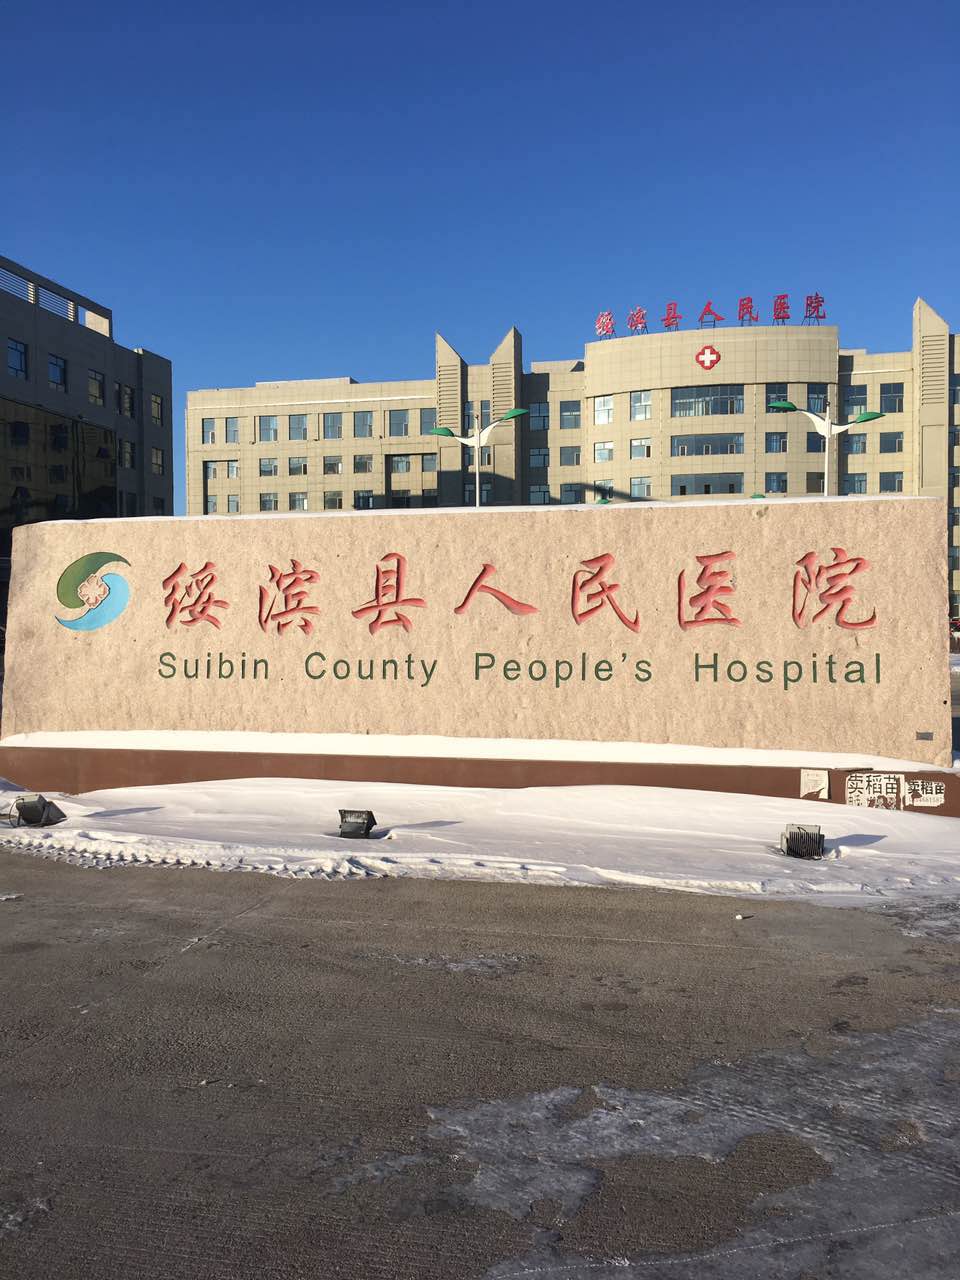 微量元素检测仪采购单位-绥滨县人民医院